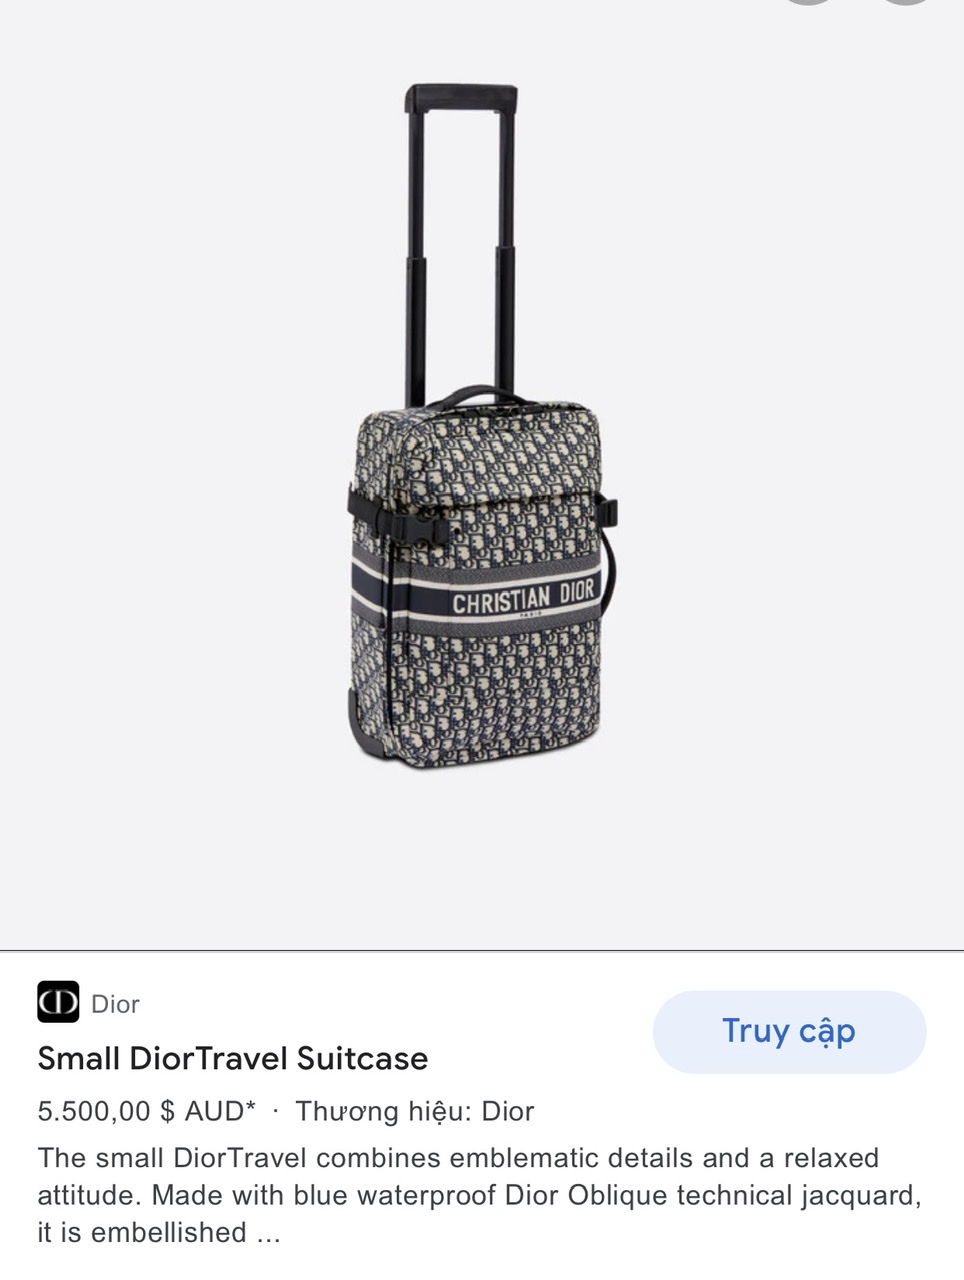 Medium DiorTravel Suitcase Blue Dior Oblique Technical Jacquard